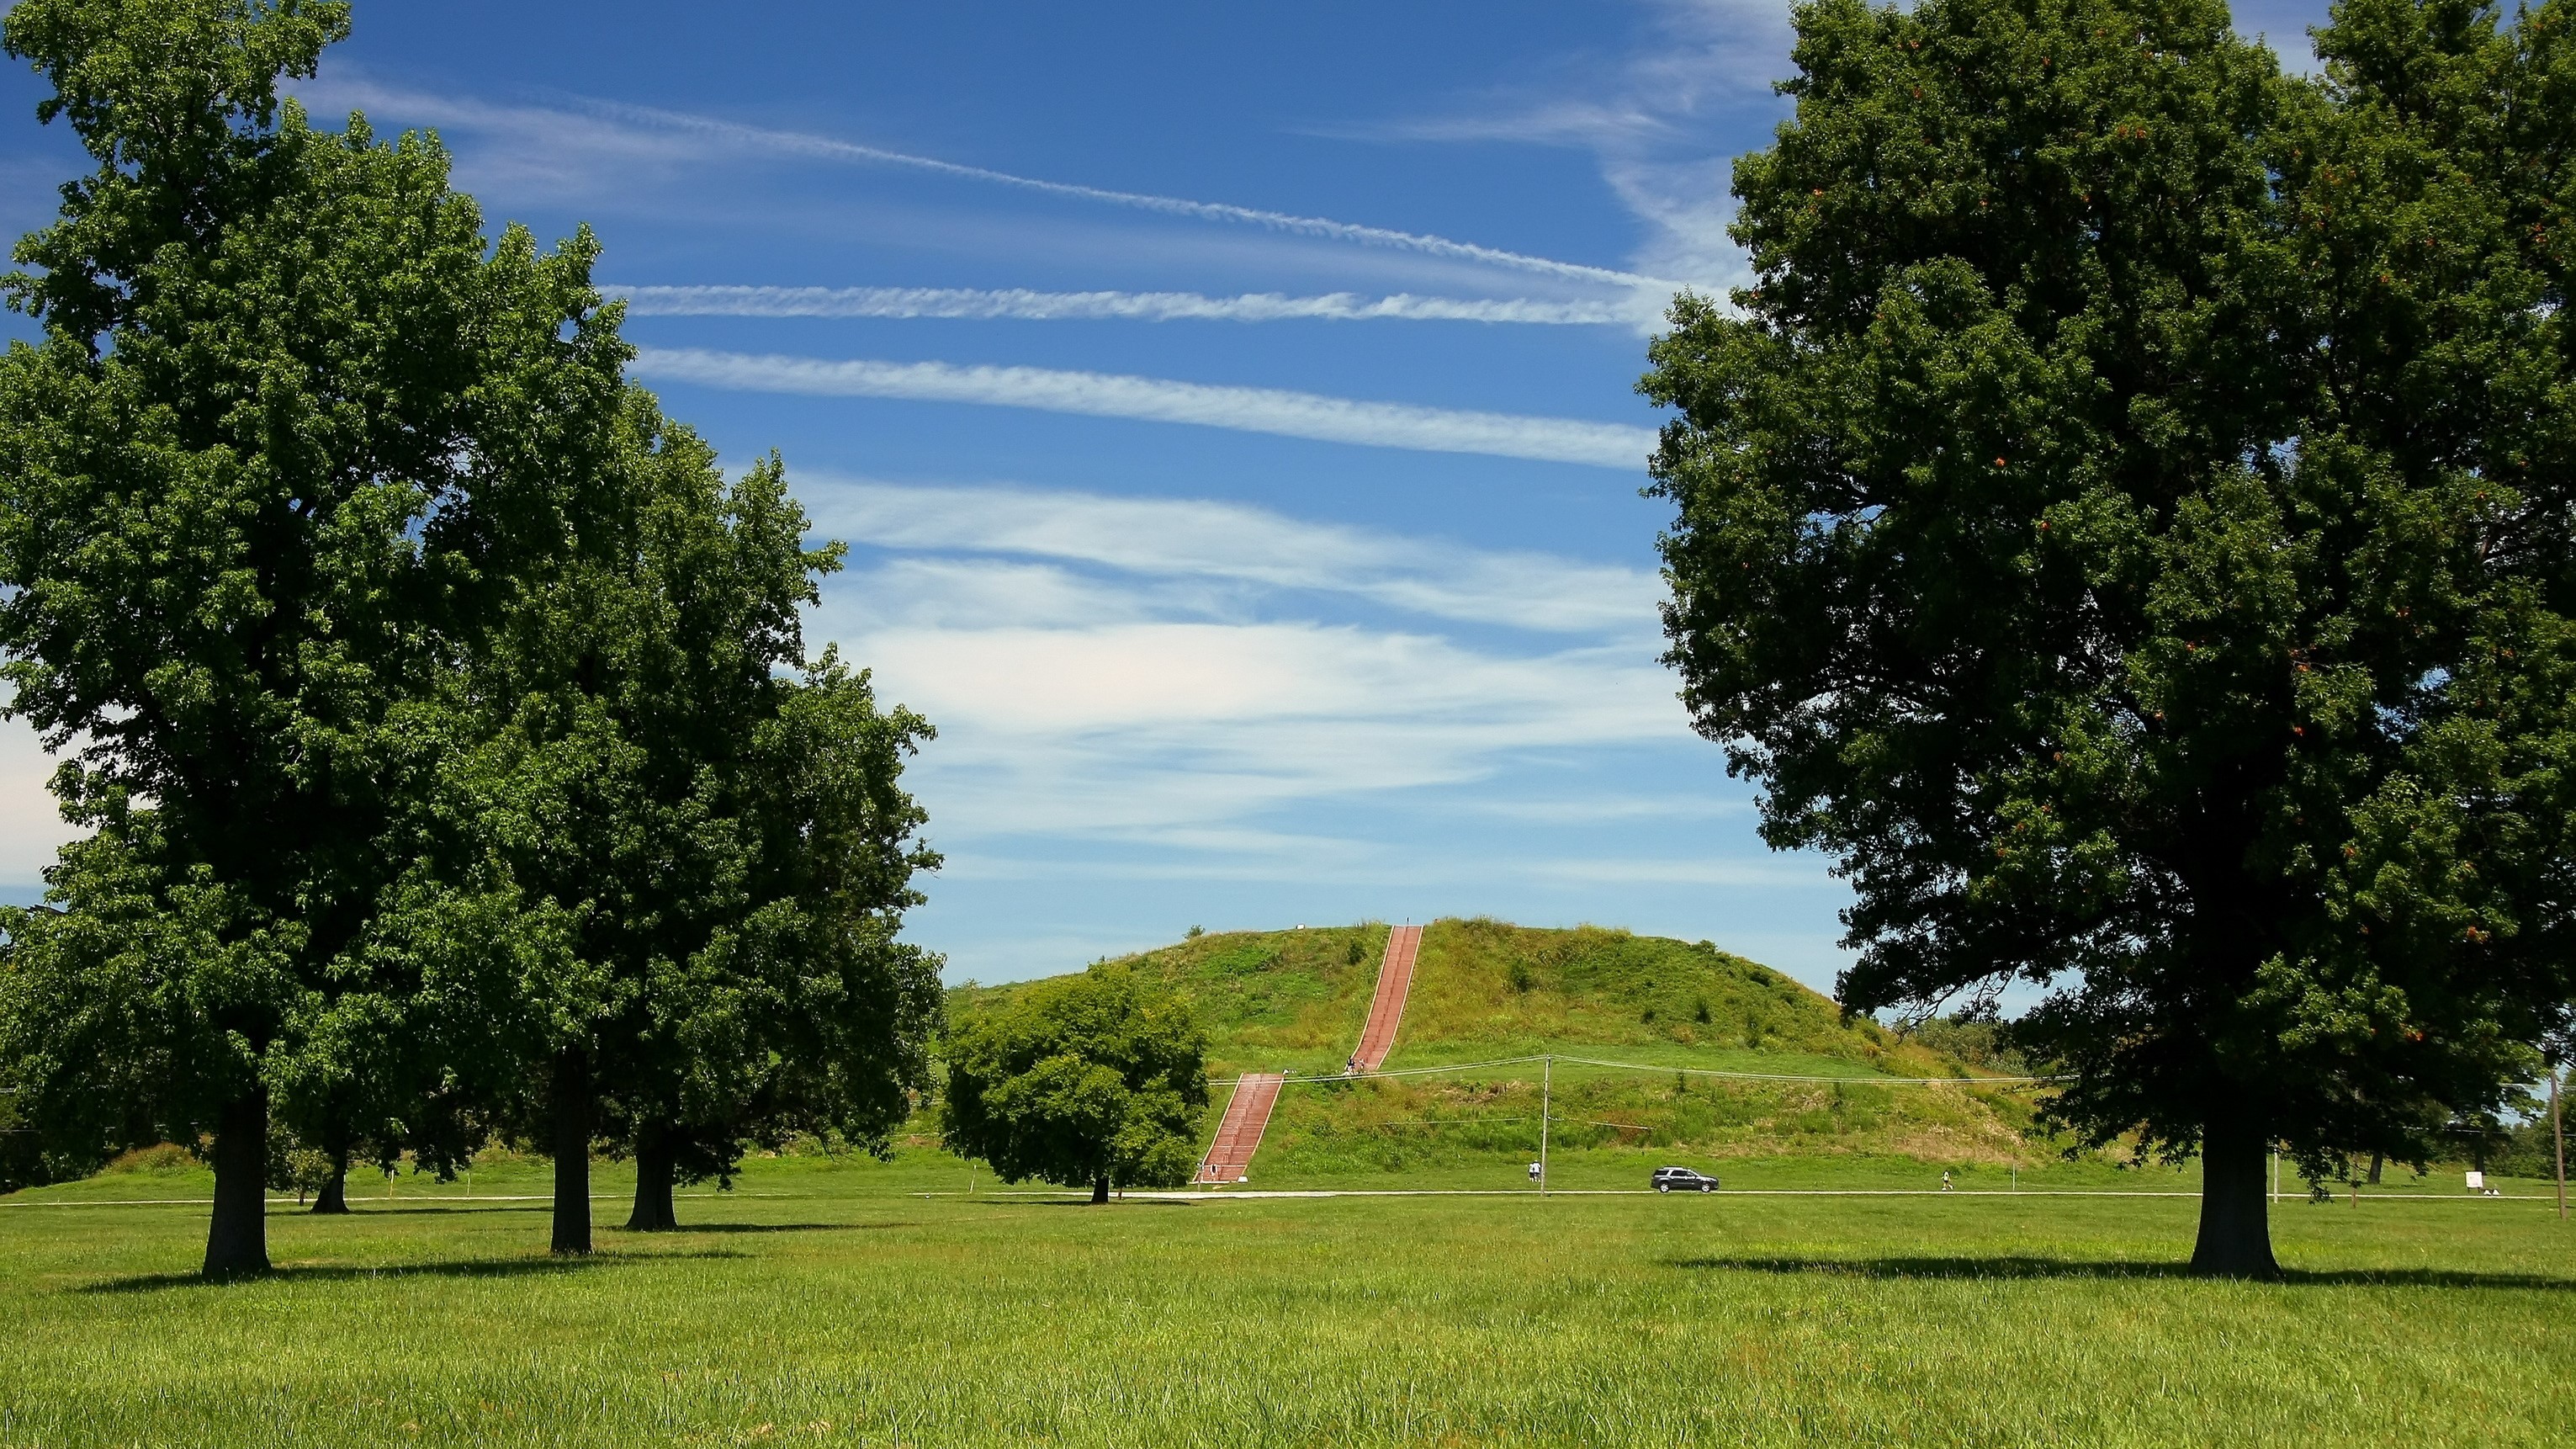 The Cahokia mound site in southern Illinois.